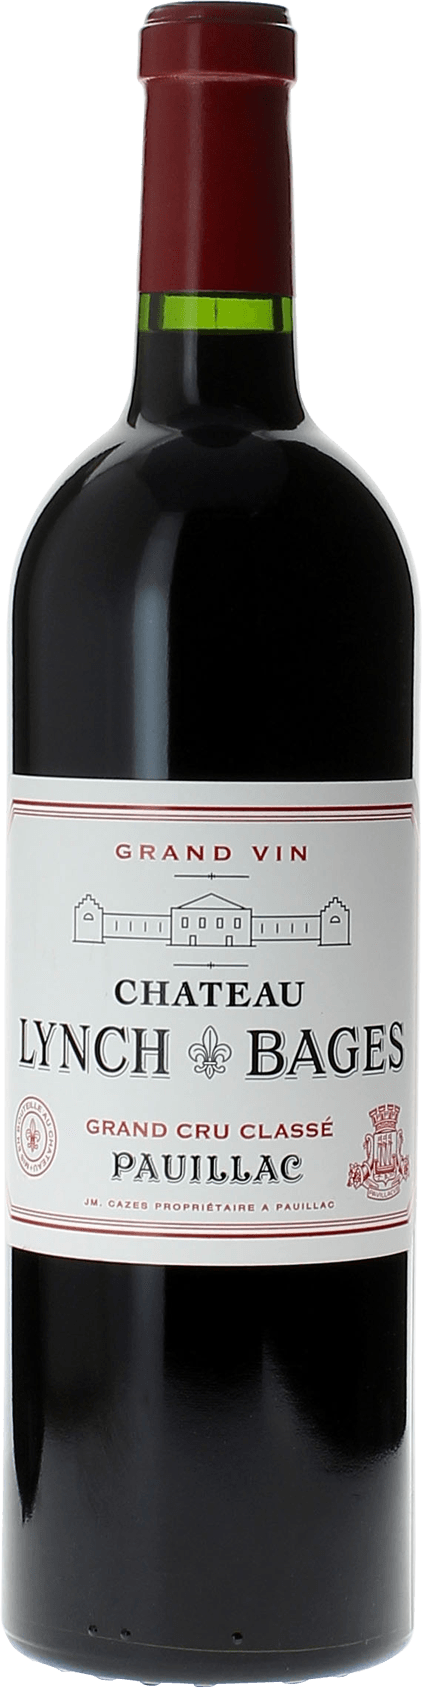 Lynch bages 2009 5 me Grand cru class Pauillac, Bordeaux rouge